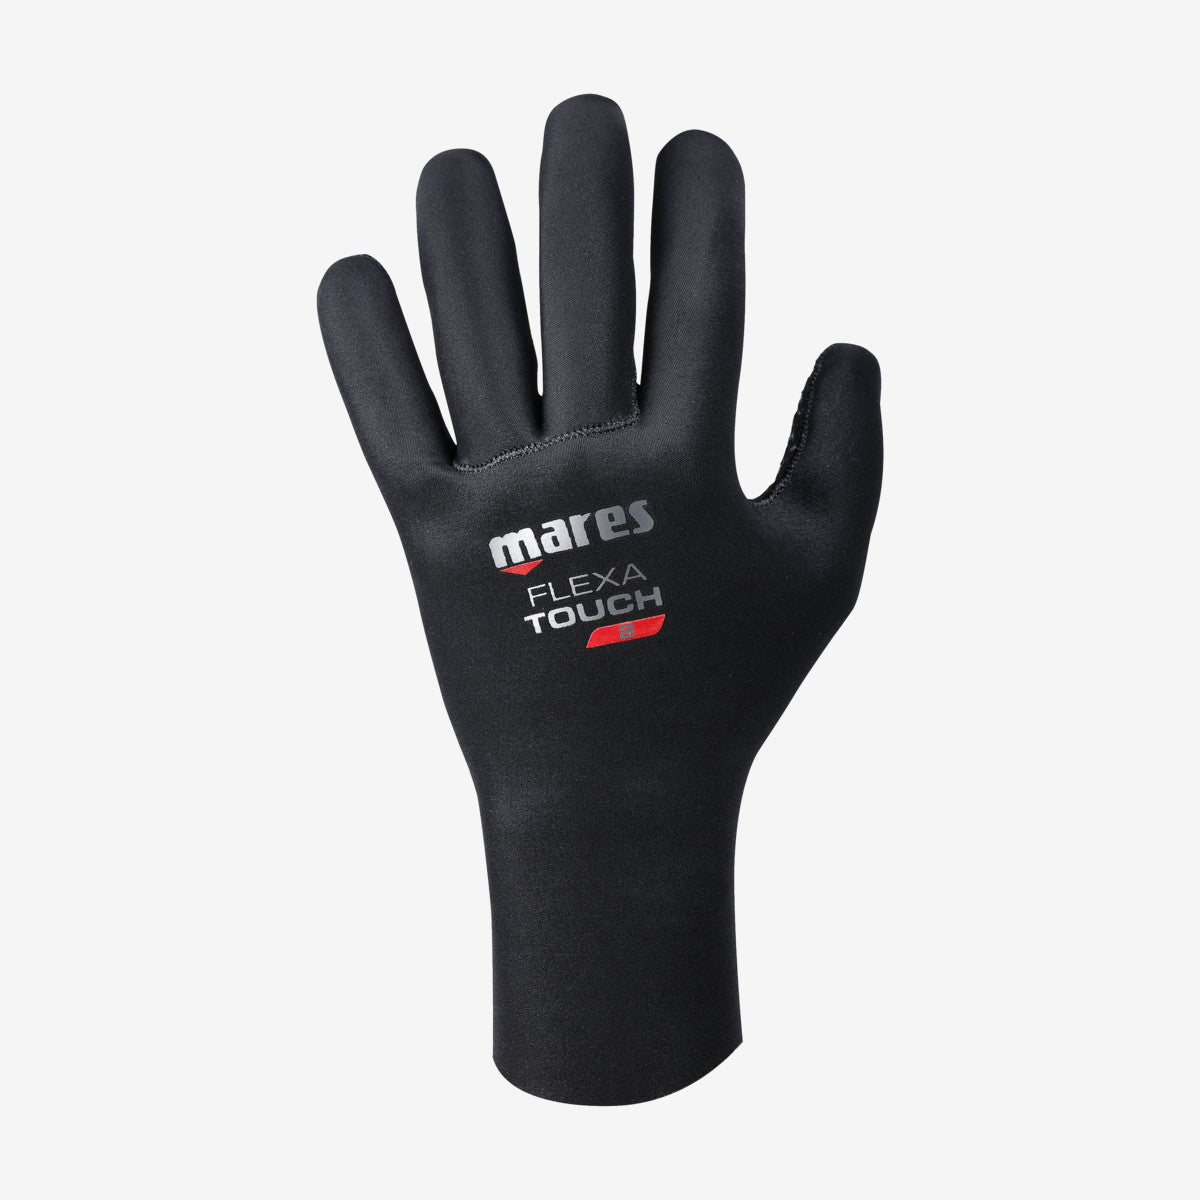 MARES Gloves Flexa classic 2mm כפפות צלילה בעובי 2 מ"מ